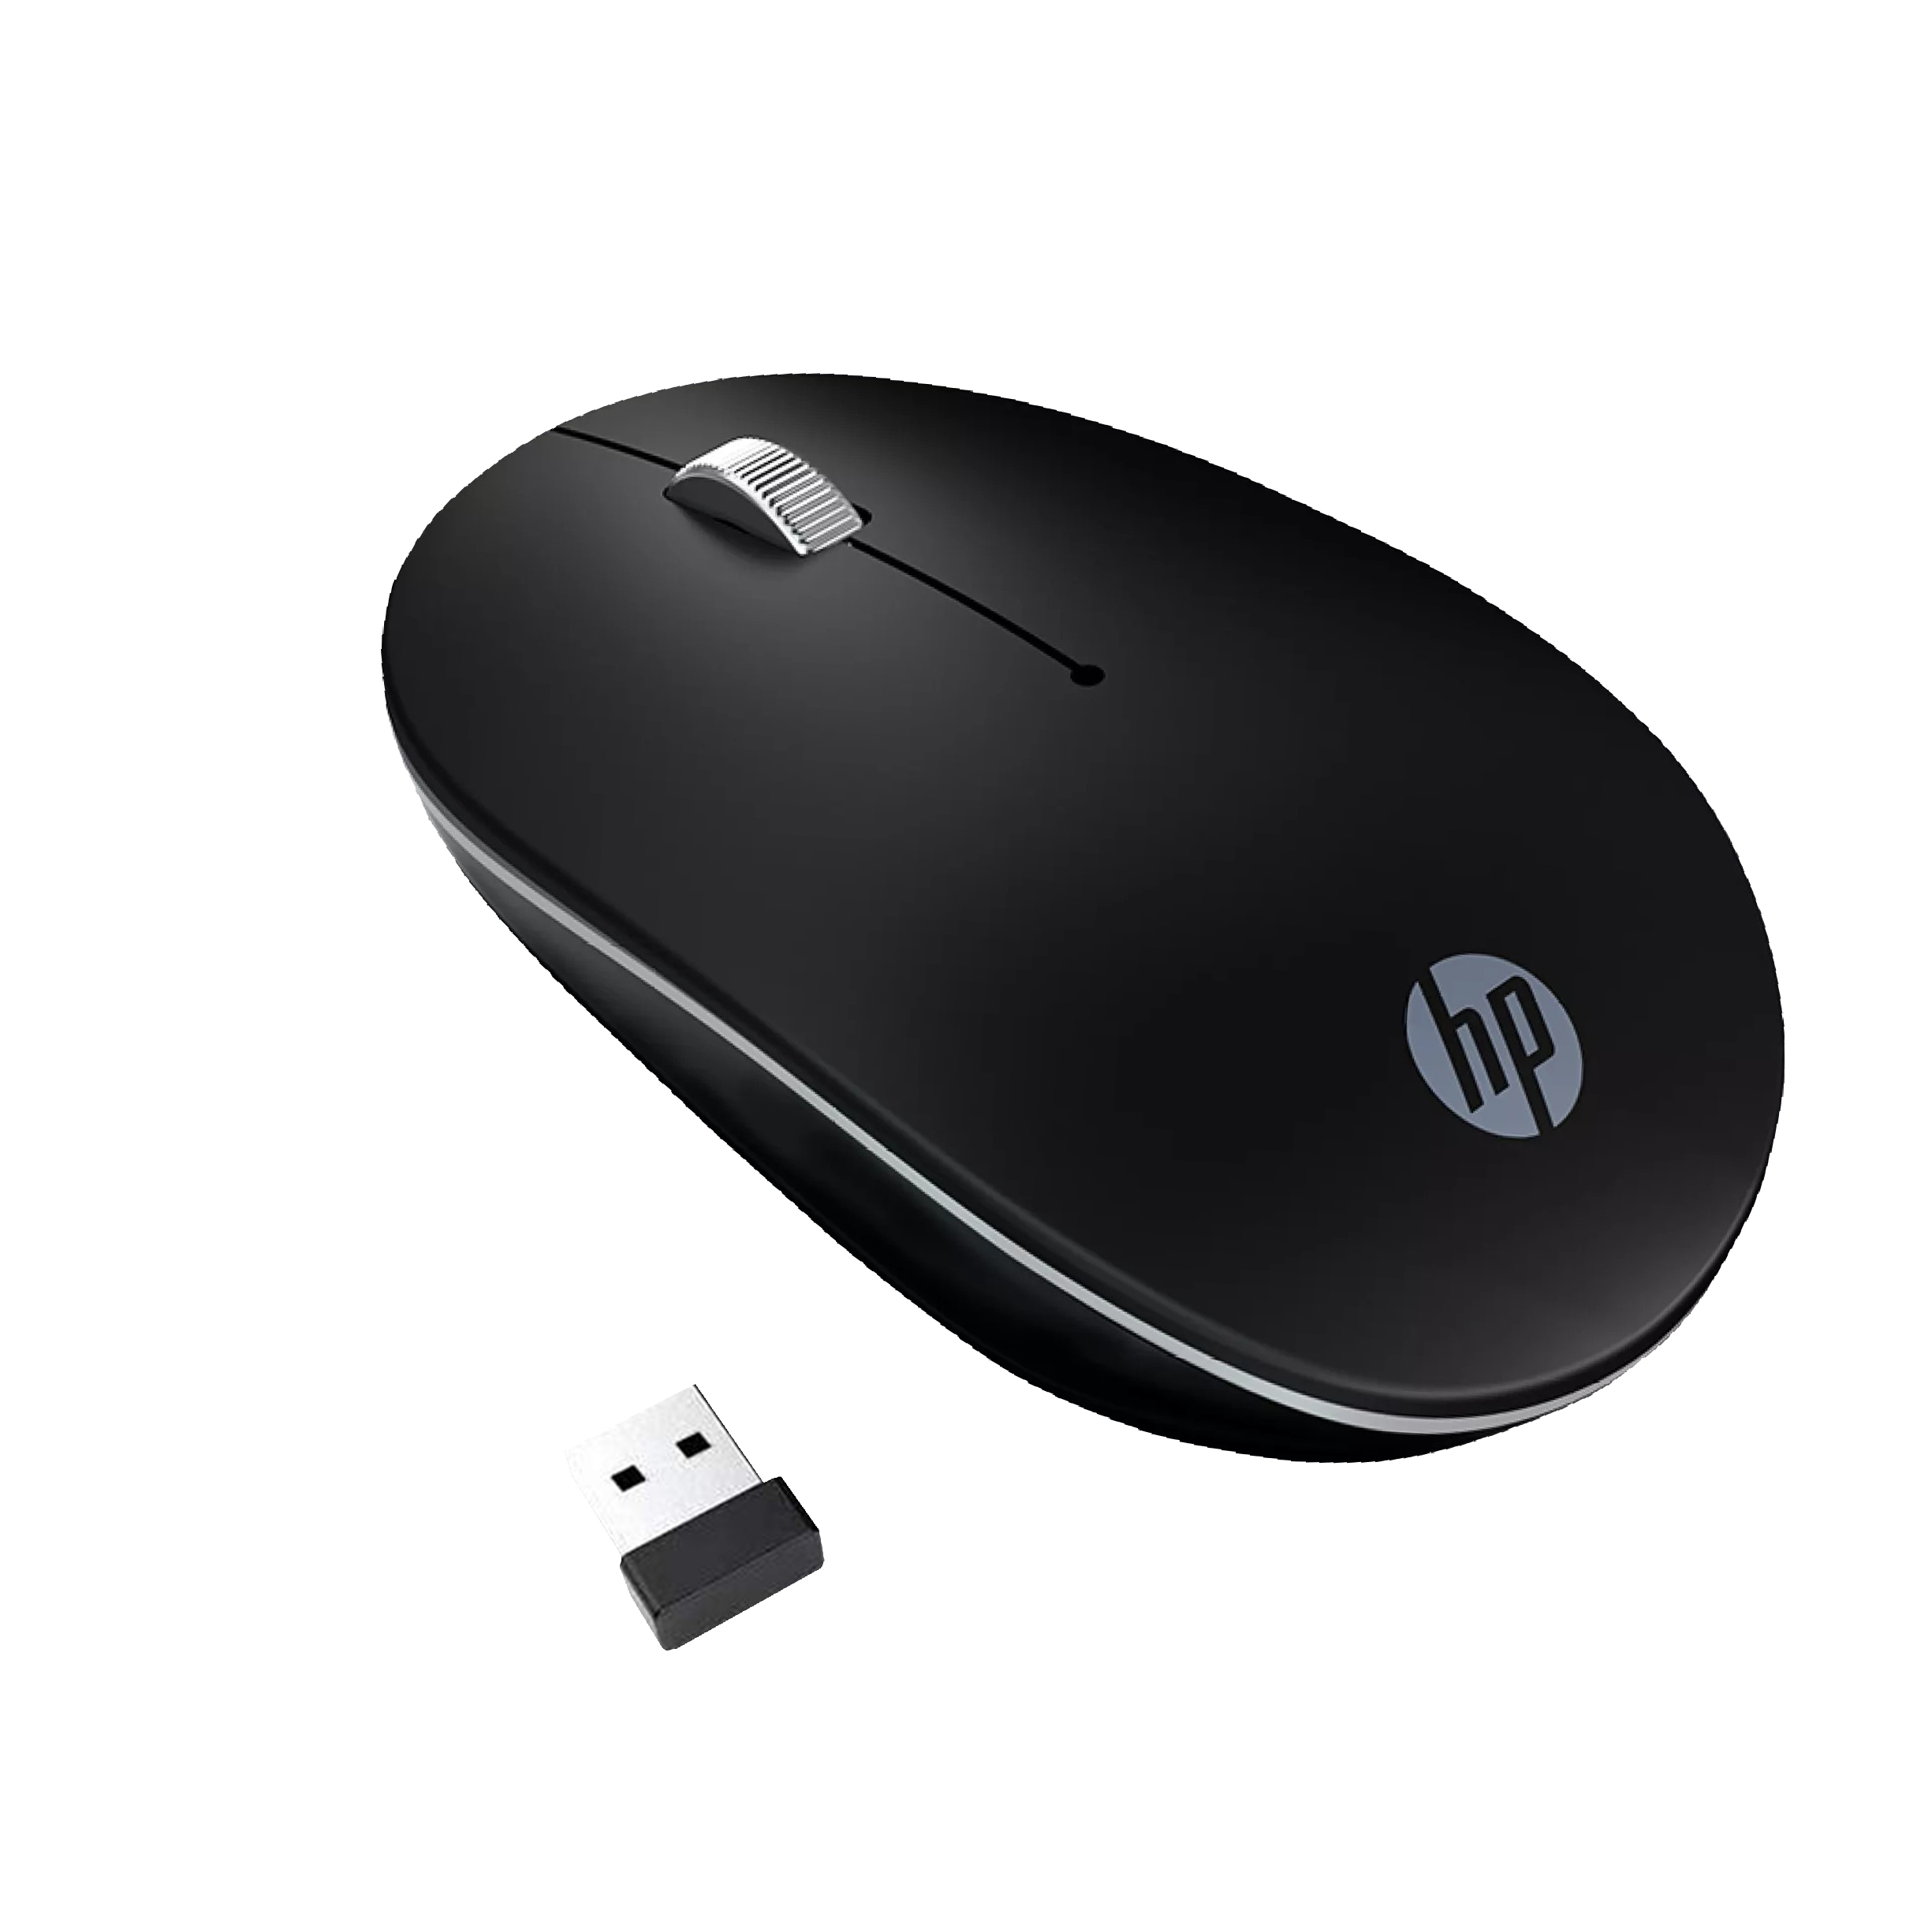 Buy Hp Wireless Mouse S1500 Online in UAE